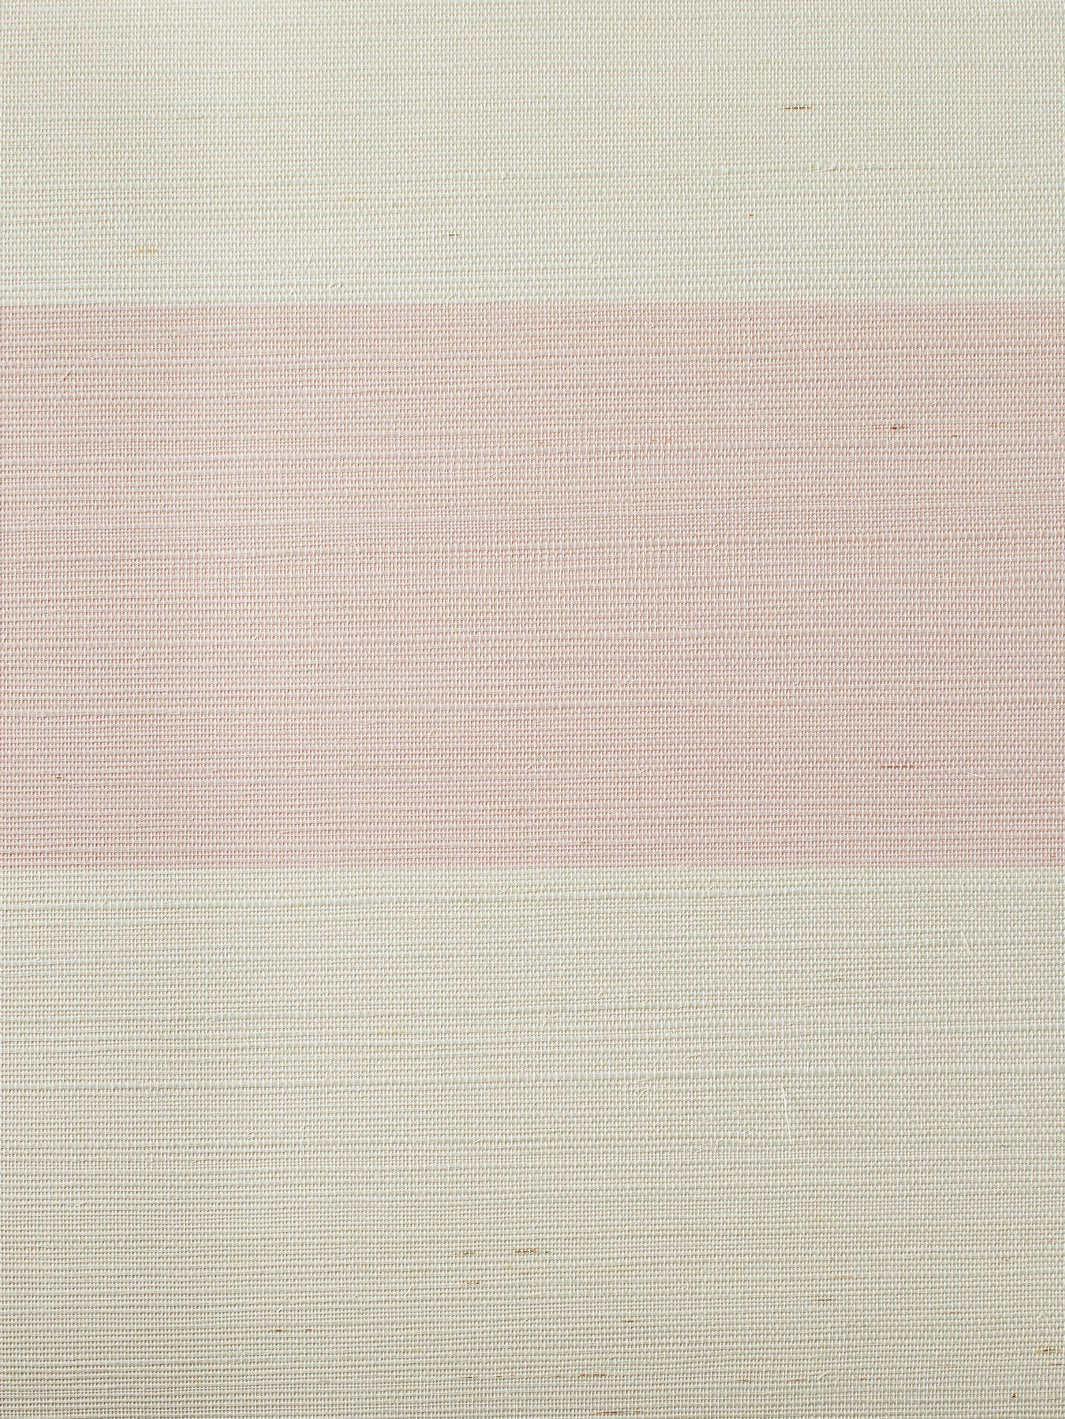 'Wide Stripe' Grasscloth' Wallpaper by Wallshoppe - Ballet Slipper